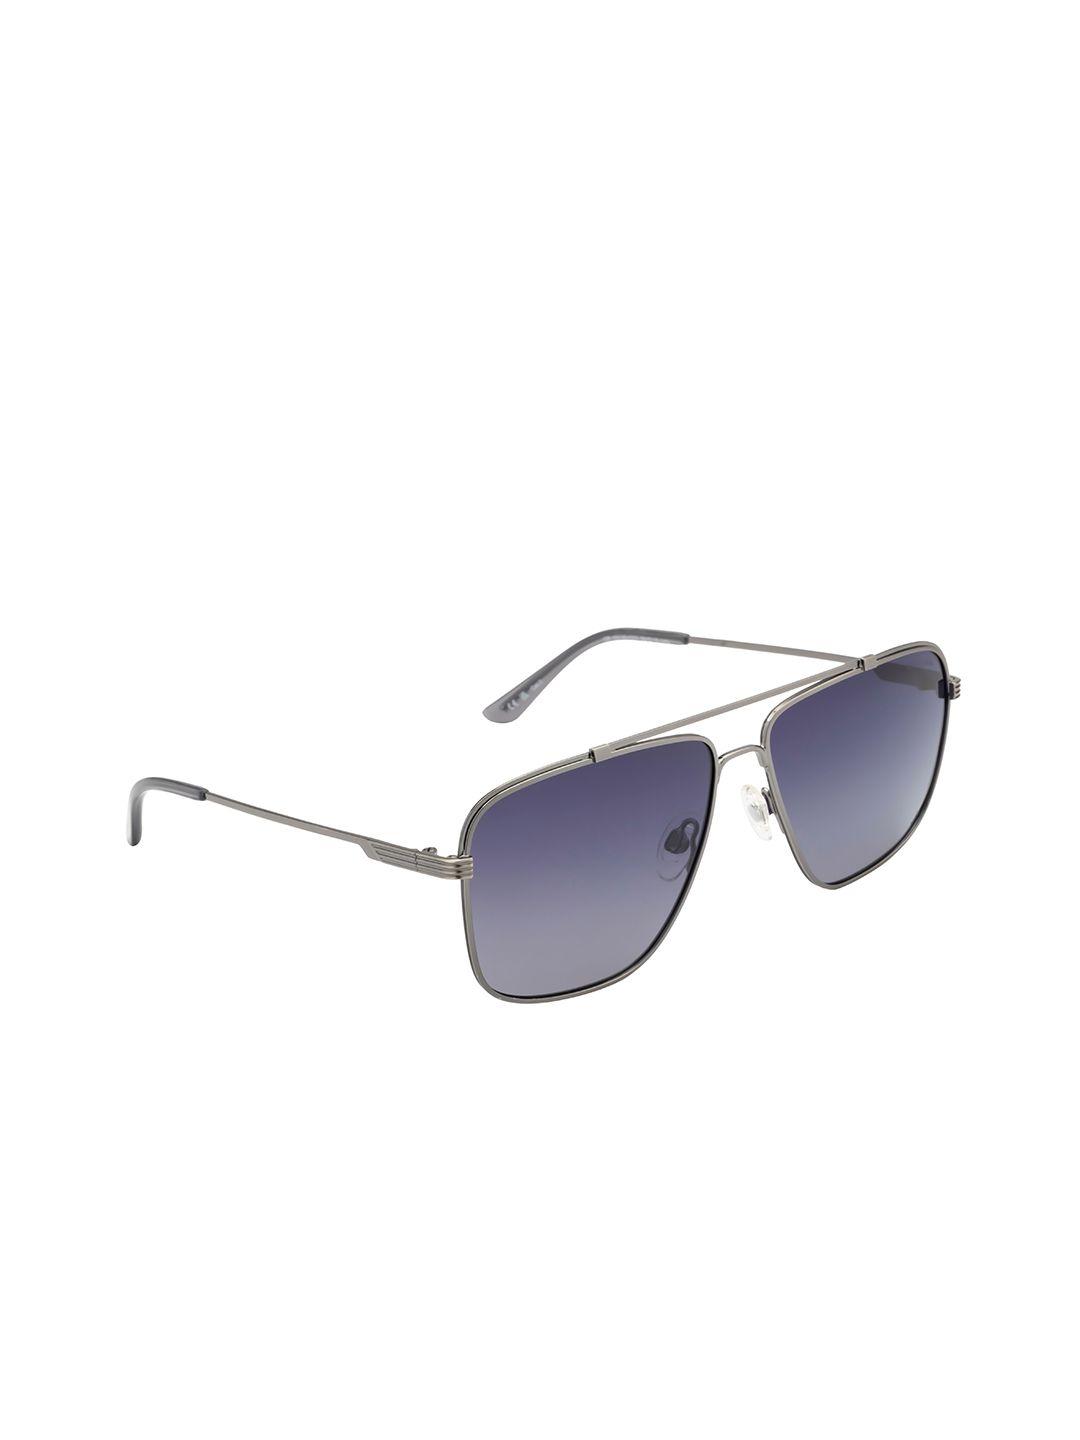 opium men square sunglasses with polarised & uv protected lens-op-10149-c03-59